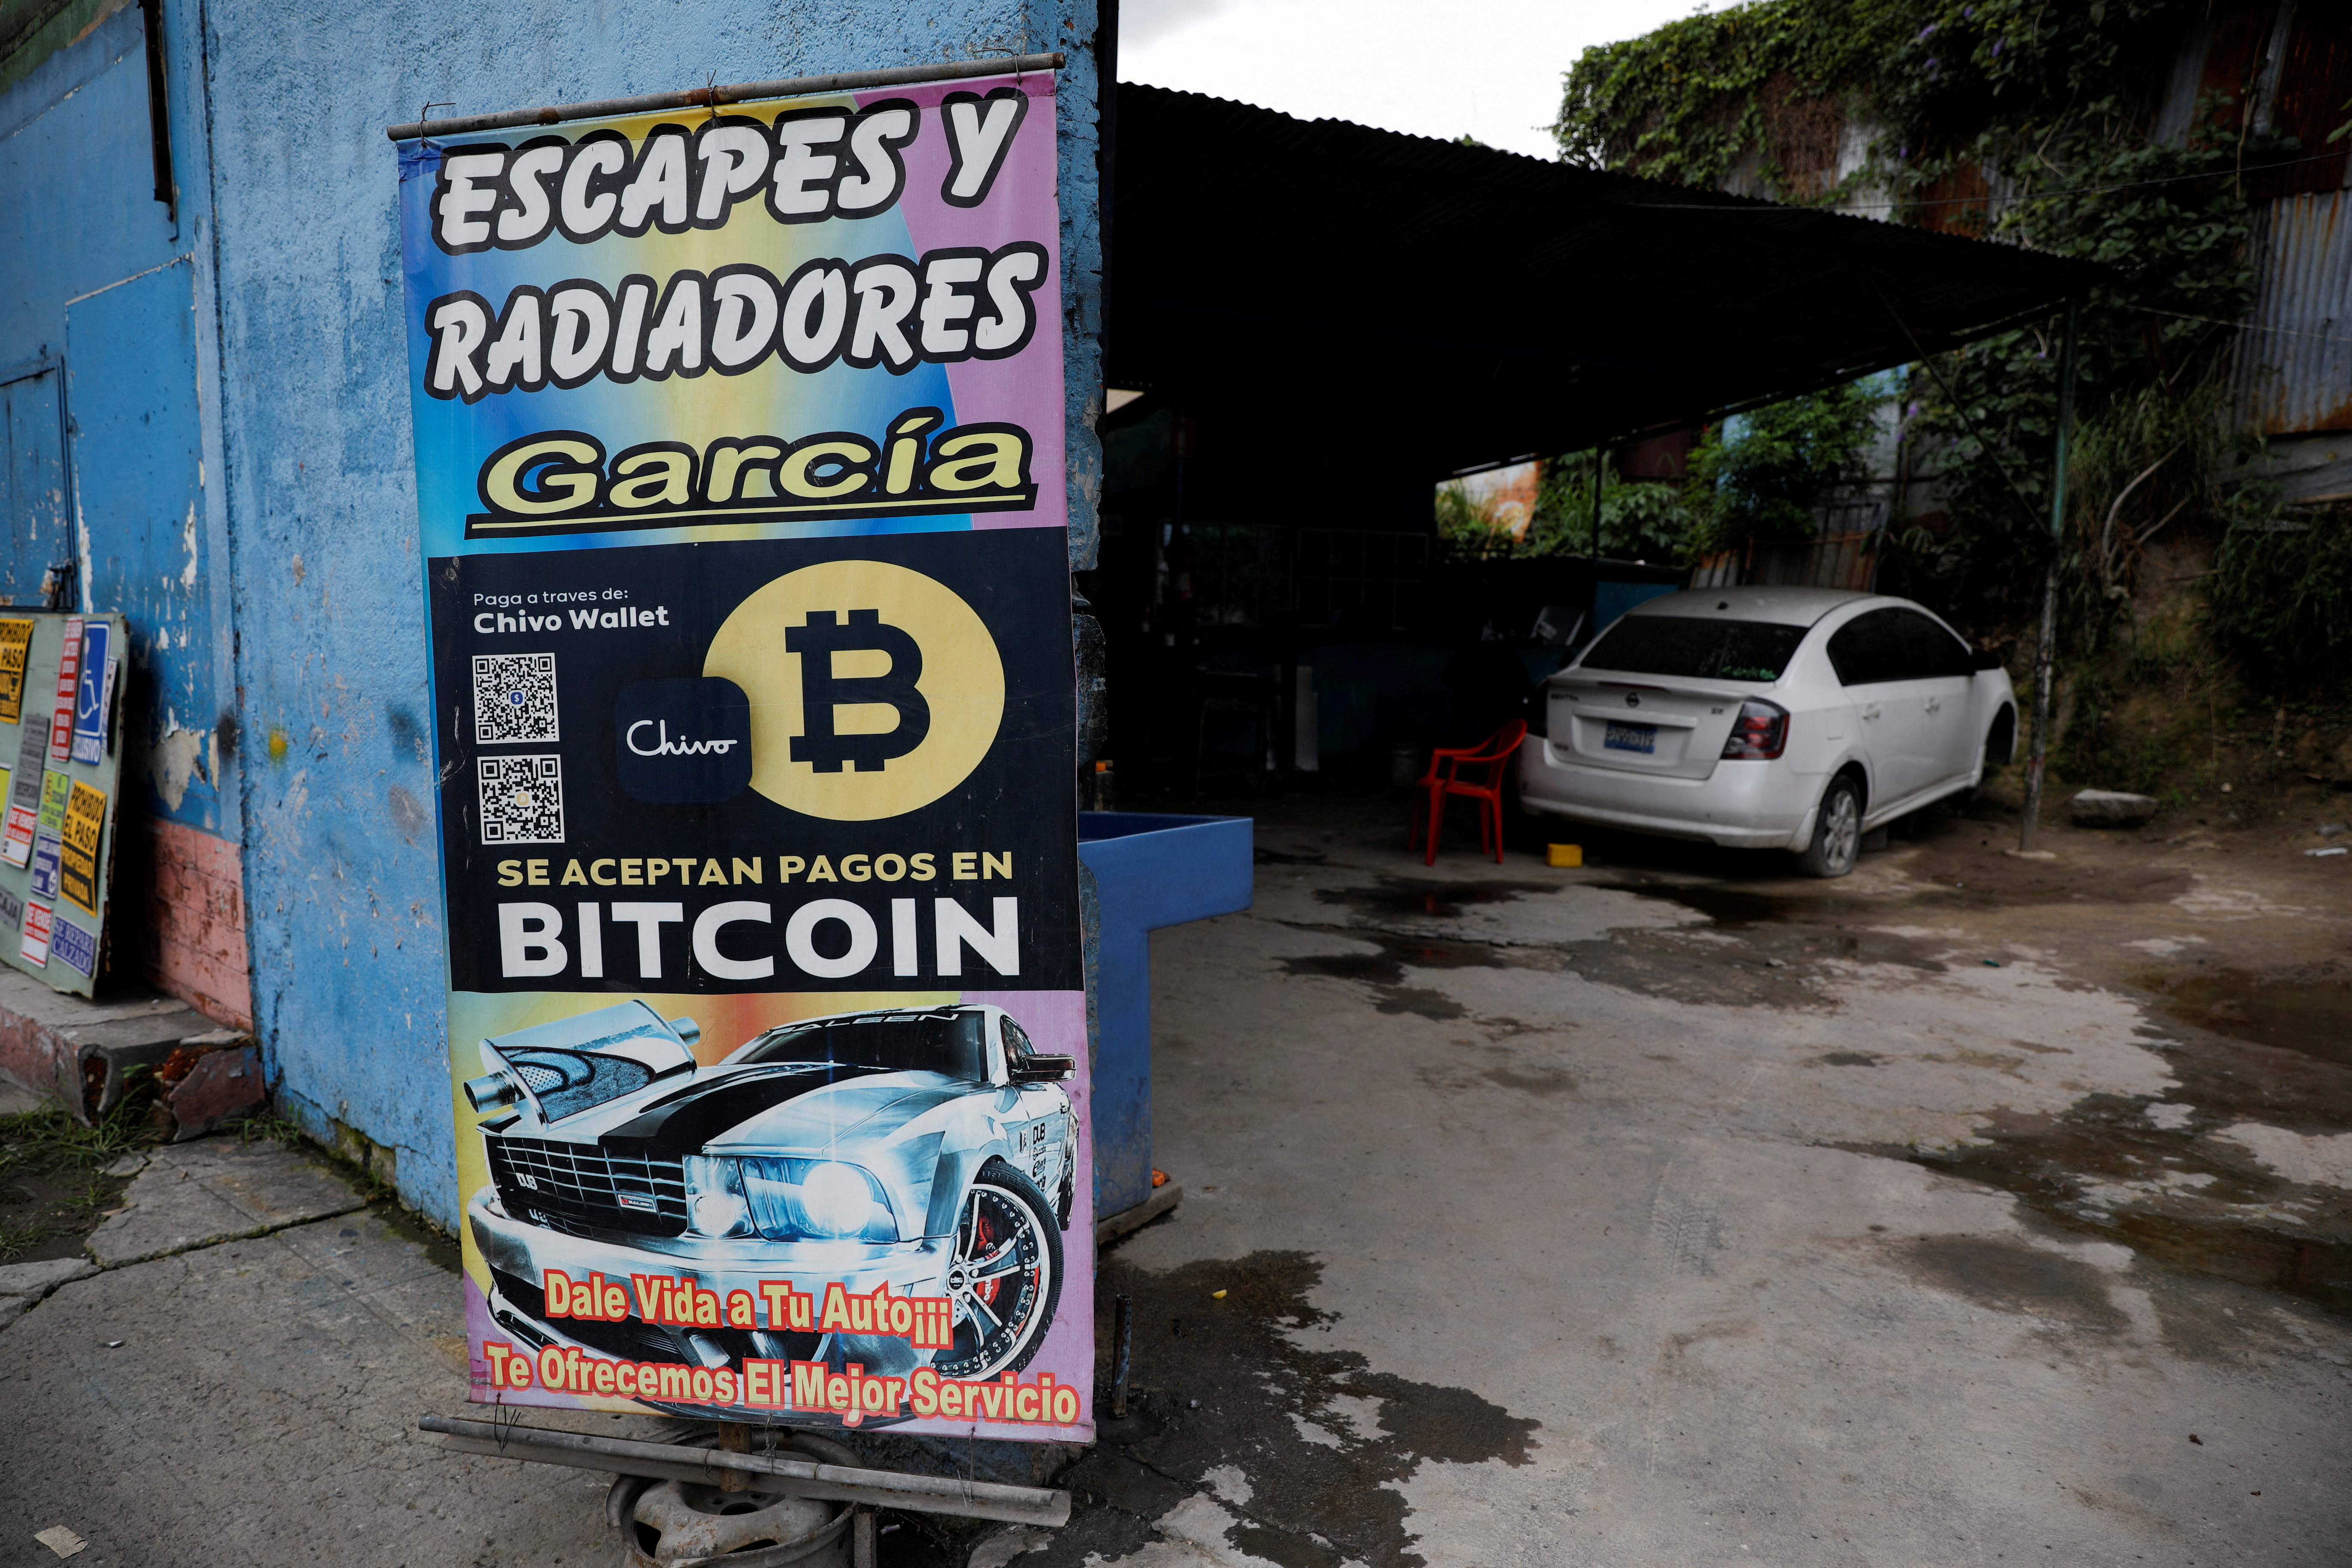 El Salvador uses Bitcoin as legal tender